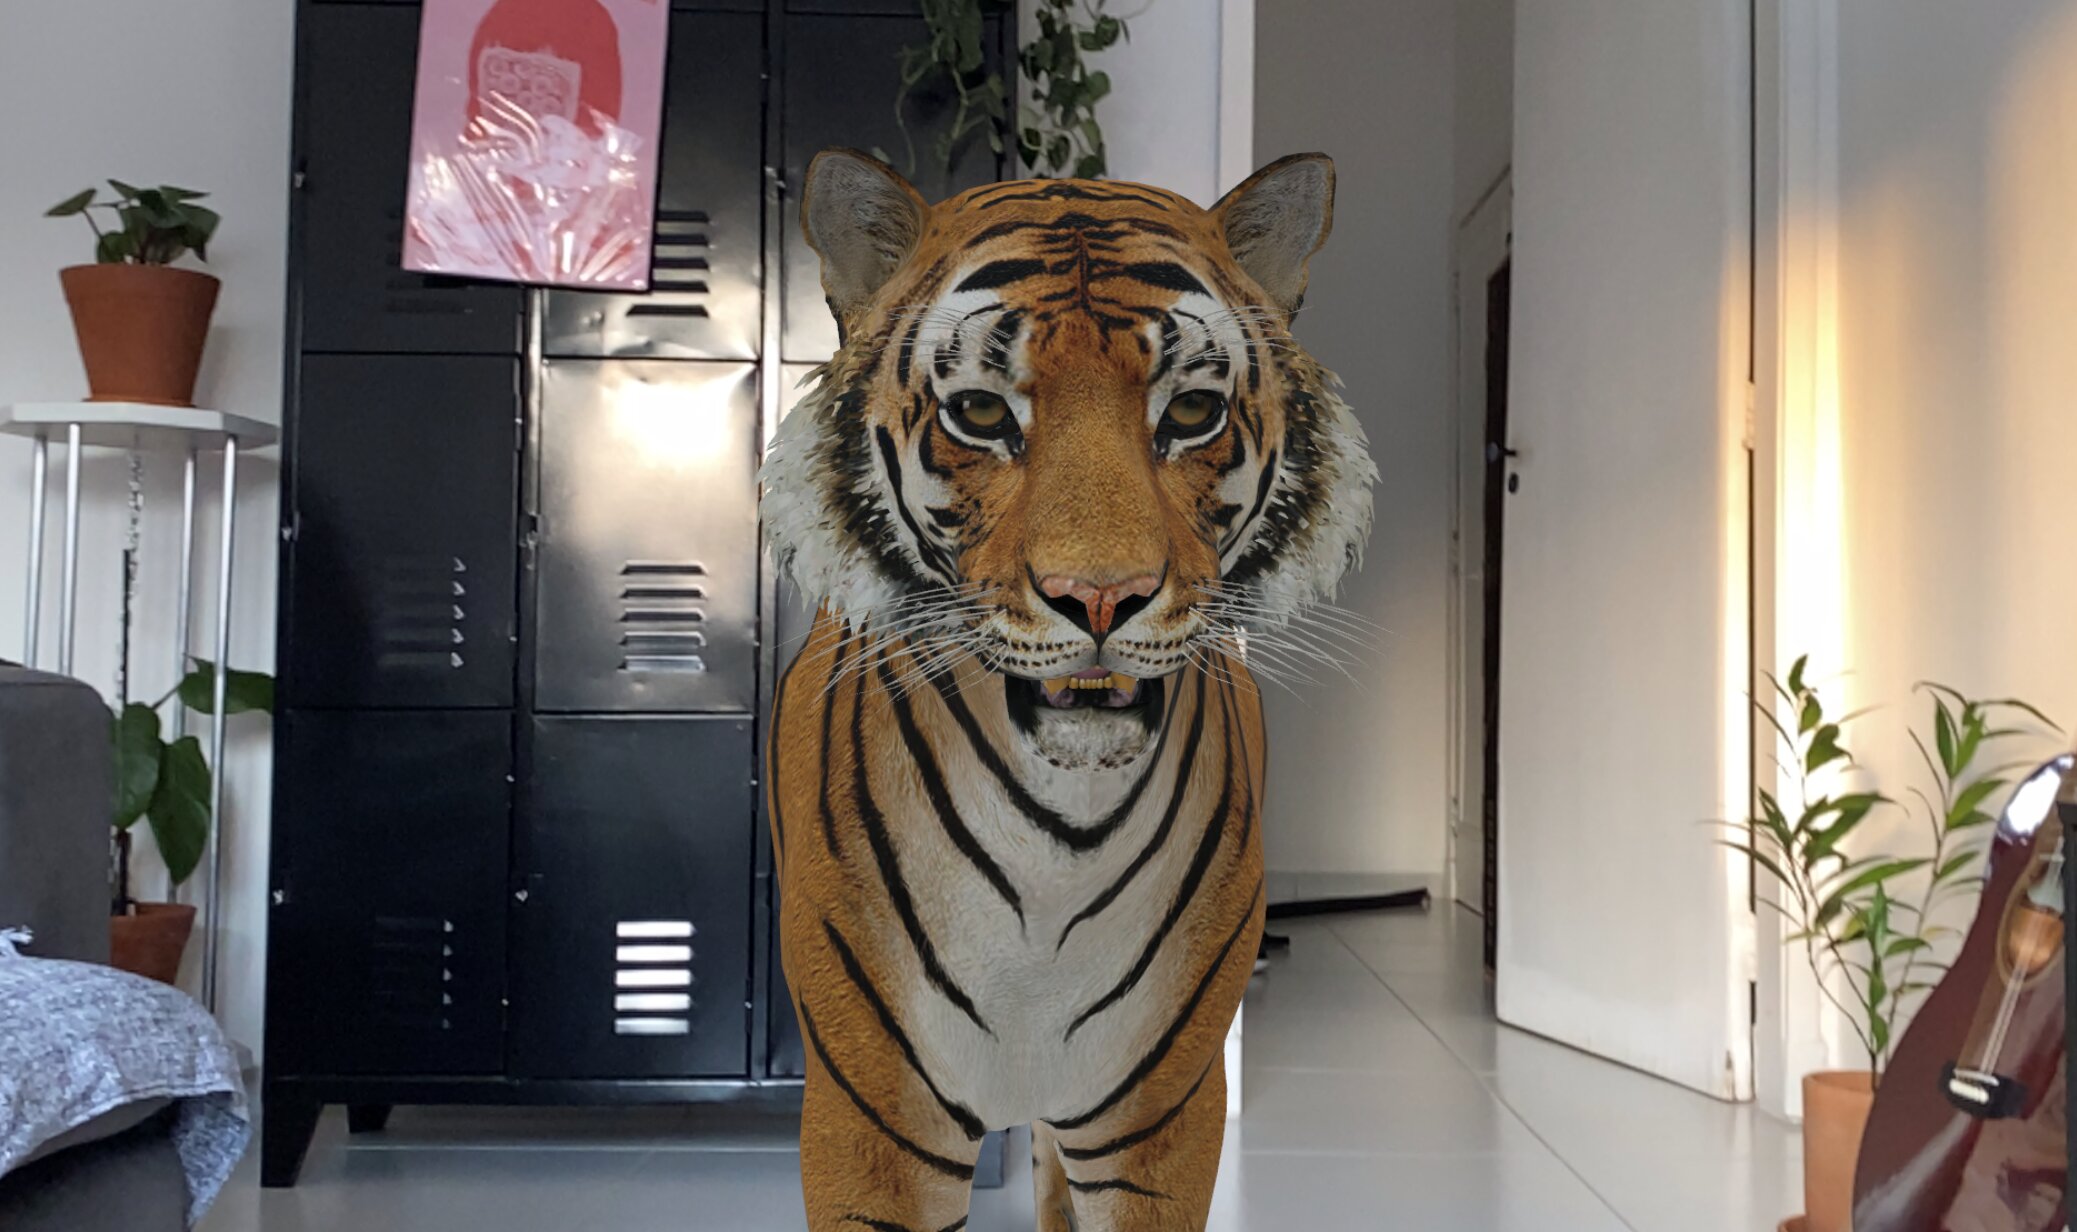 Como ver animais em 3D? Google usa realidade aumentada para criar projeções